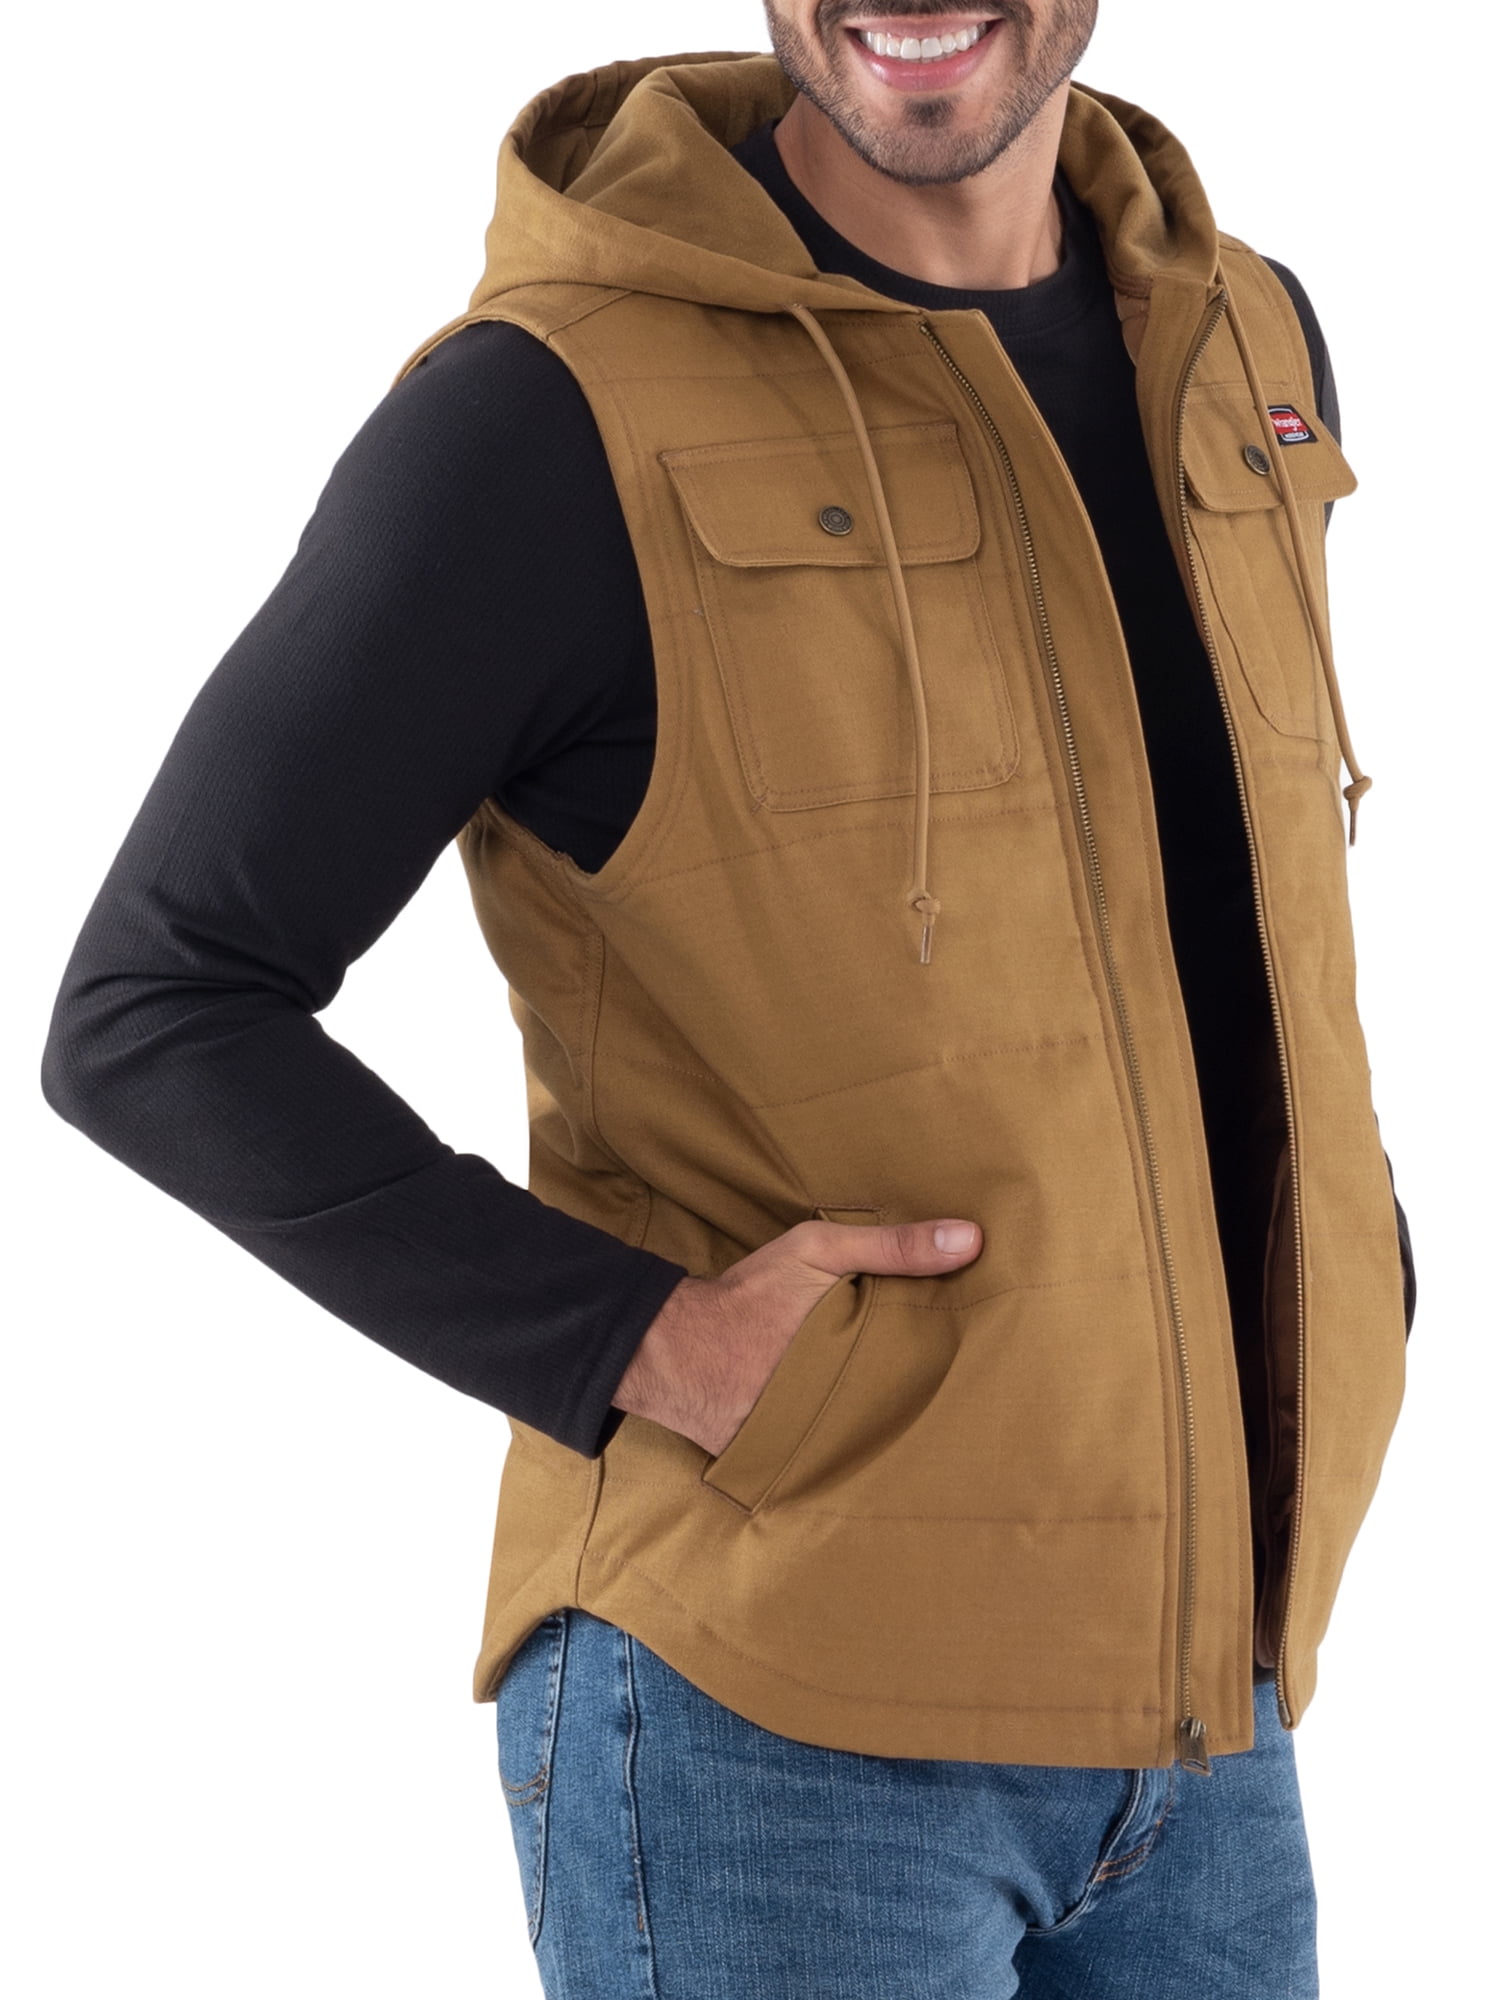 Wrangler Workwear Men's Work Vest with Hood 